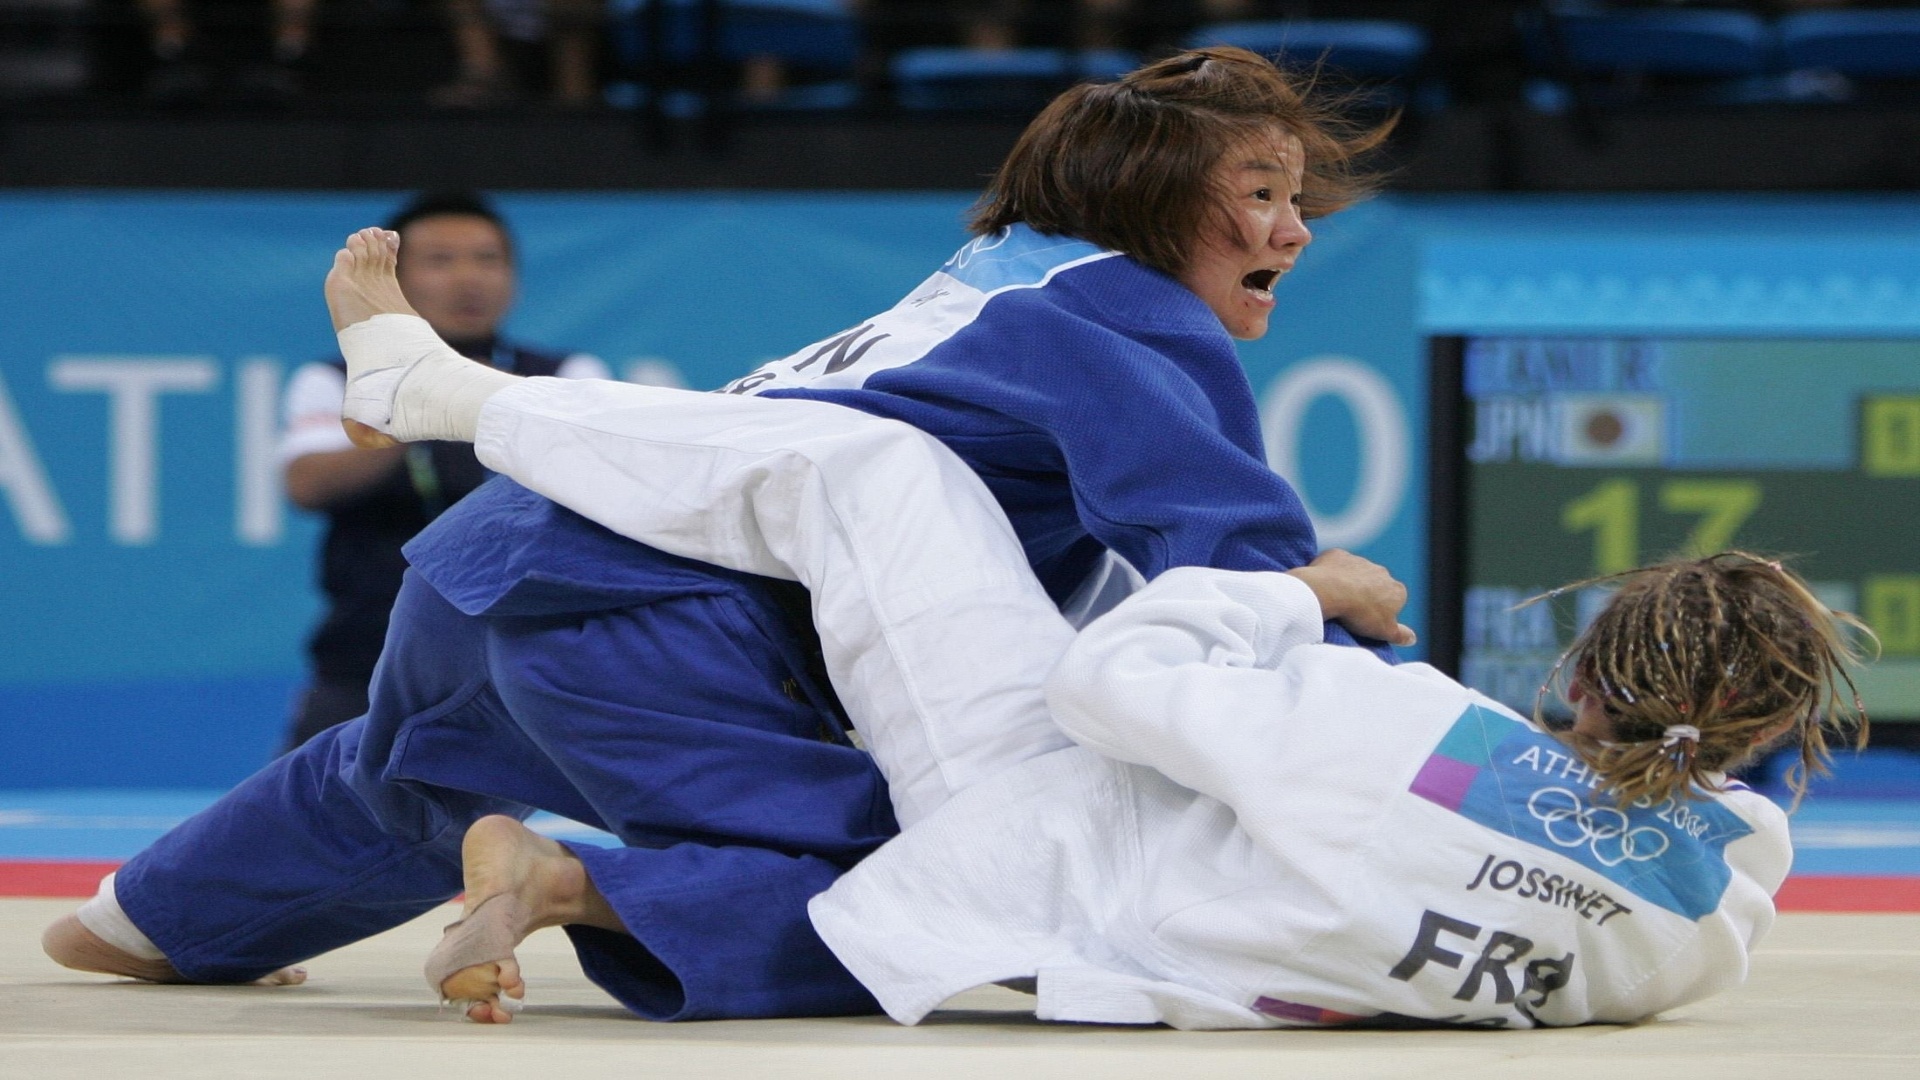 14.ago.2004 - Japonesa Ryoko Tamura Tani aplica um golpe na francesa Frederique Jossinet na disputa do judô na Olimpíada de Atenas